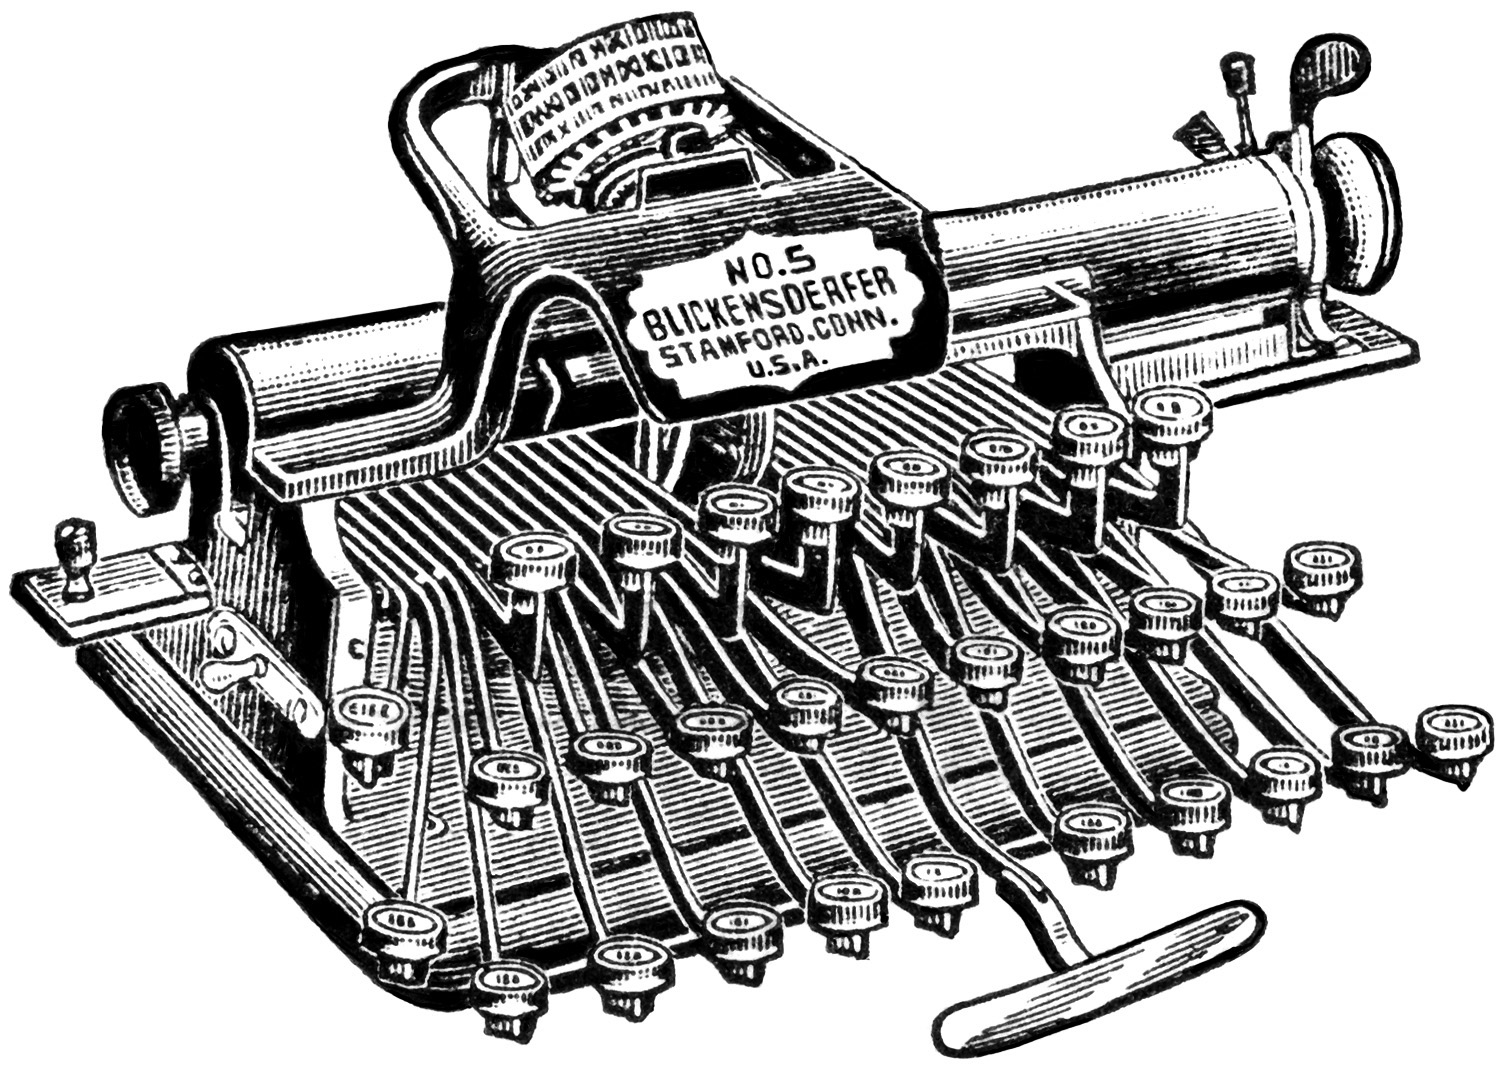 Free Vintage Image ~ Blickensderfer Typewriters | Old Design Shop Blog